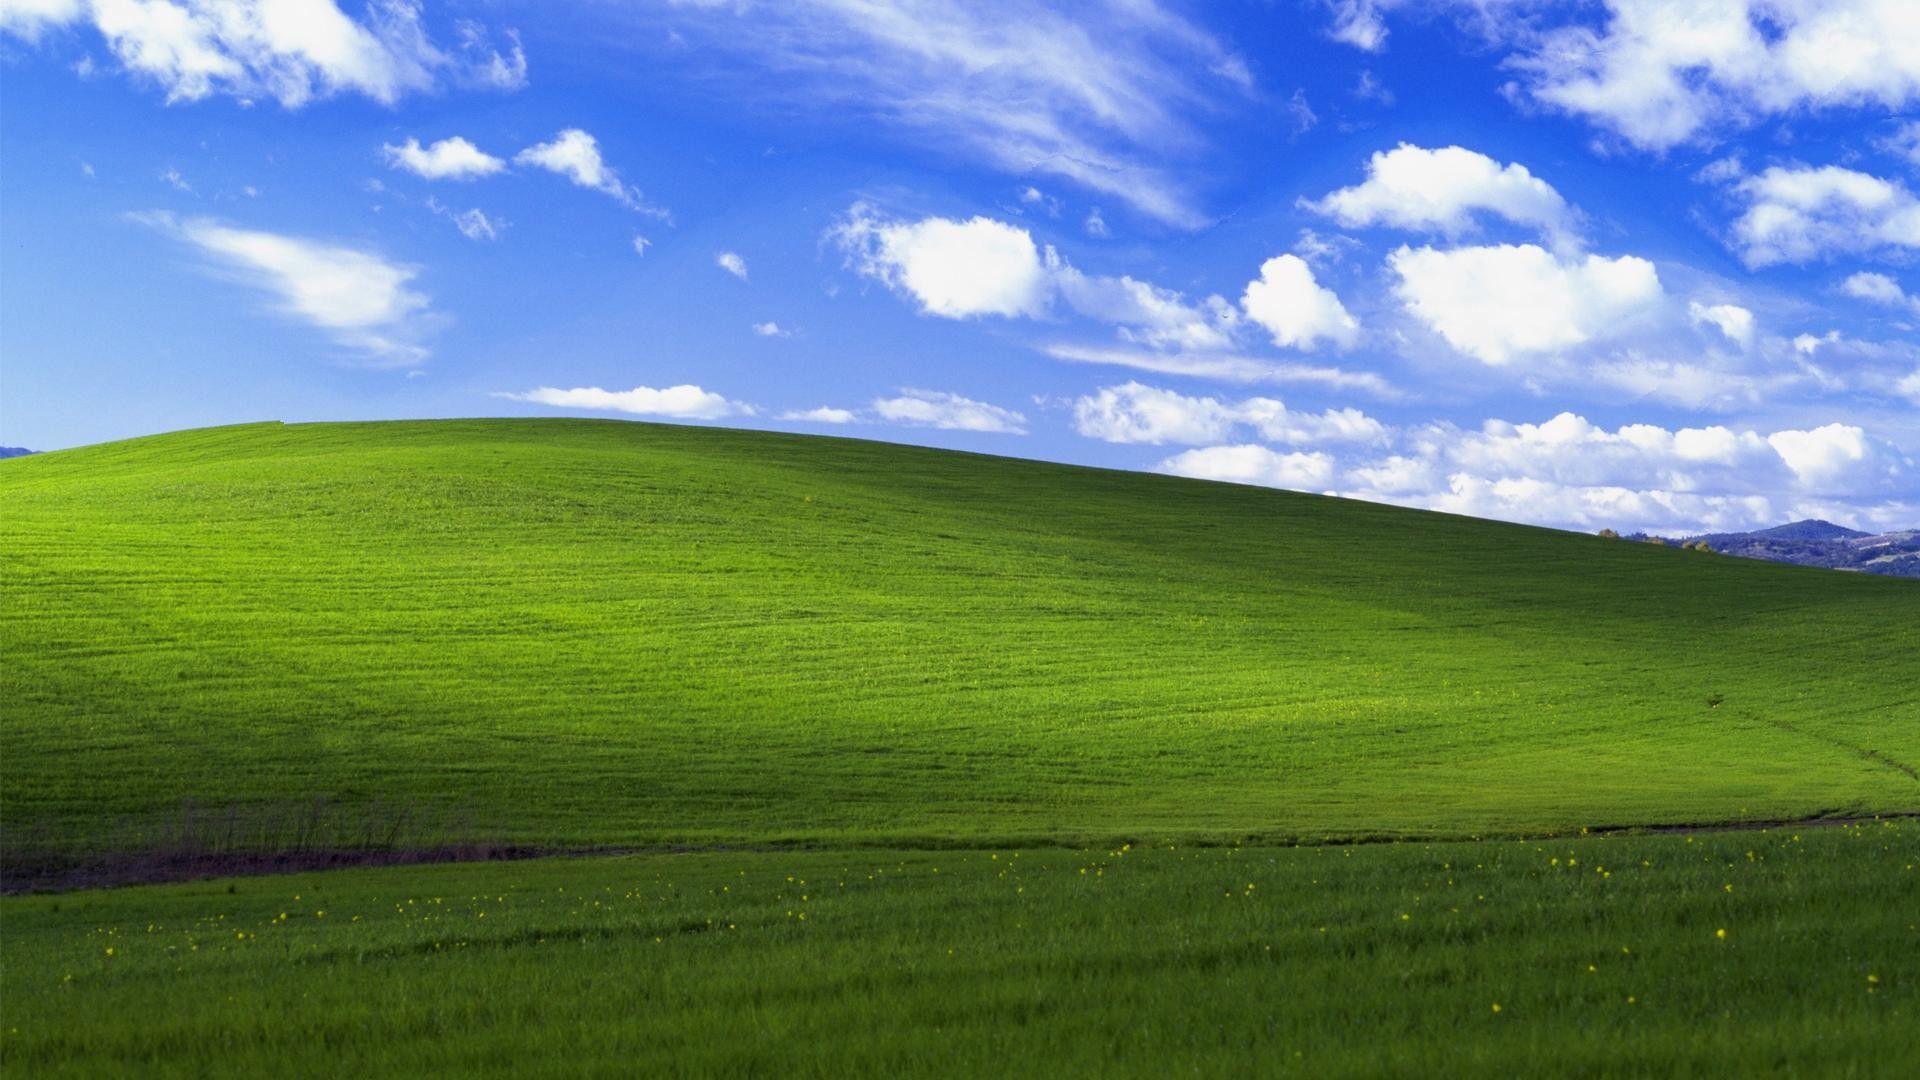 Bạn là fan hâm mộ của bộ hình nền Windows XP? Hãy ghé thăm WallpaperDog để khám phá những hình ảnh đẹp, phong cách và đa dạng hơn nữa. Tại đây, chúng tôi cung cấp đầy đủ các bức hình để bạn lựa chọn.